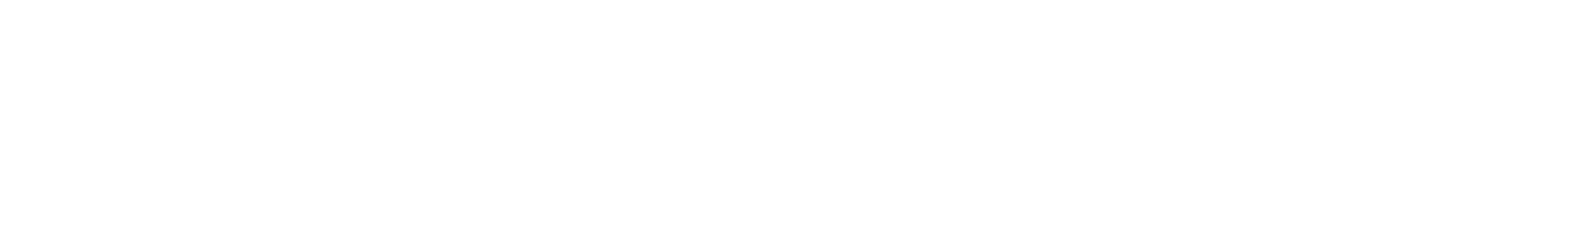 Holmen
 logo large for dark backgrounds (transparent PNG)